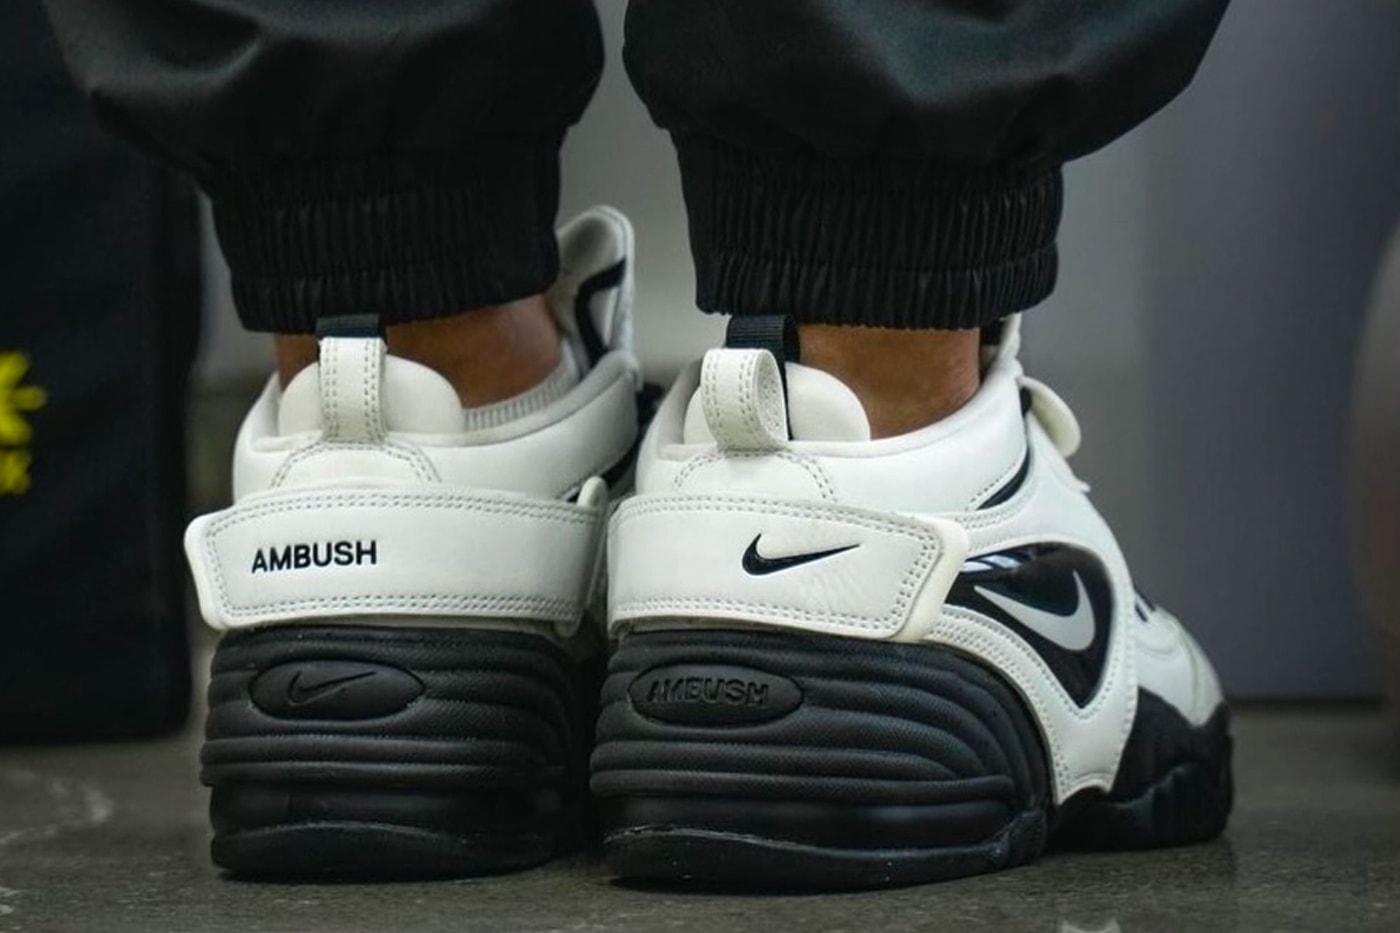 AMBUSH Nike Air Adjust Force White Black On-Foot Look Release Info Date Buy Price Yoon